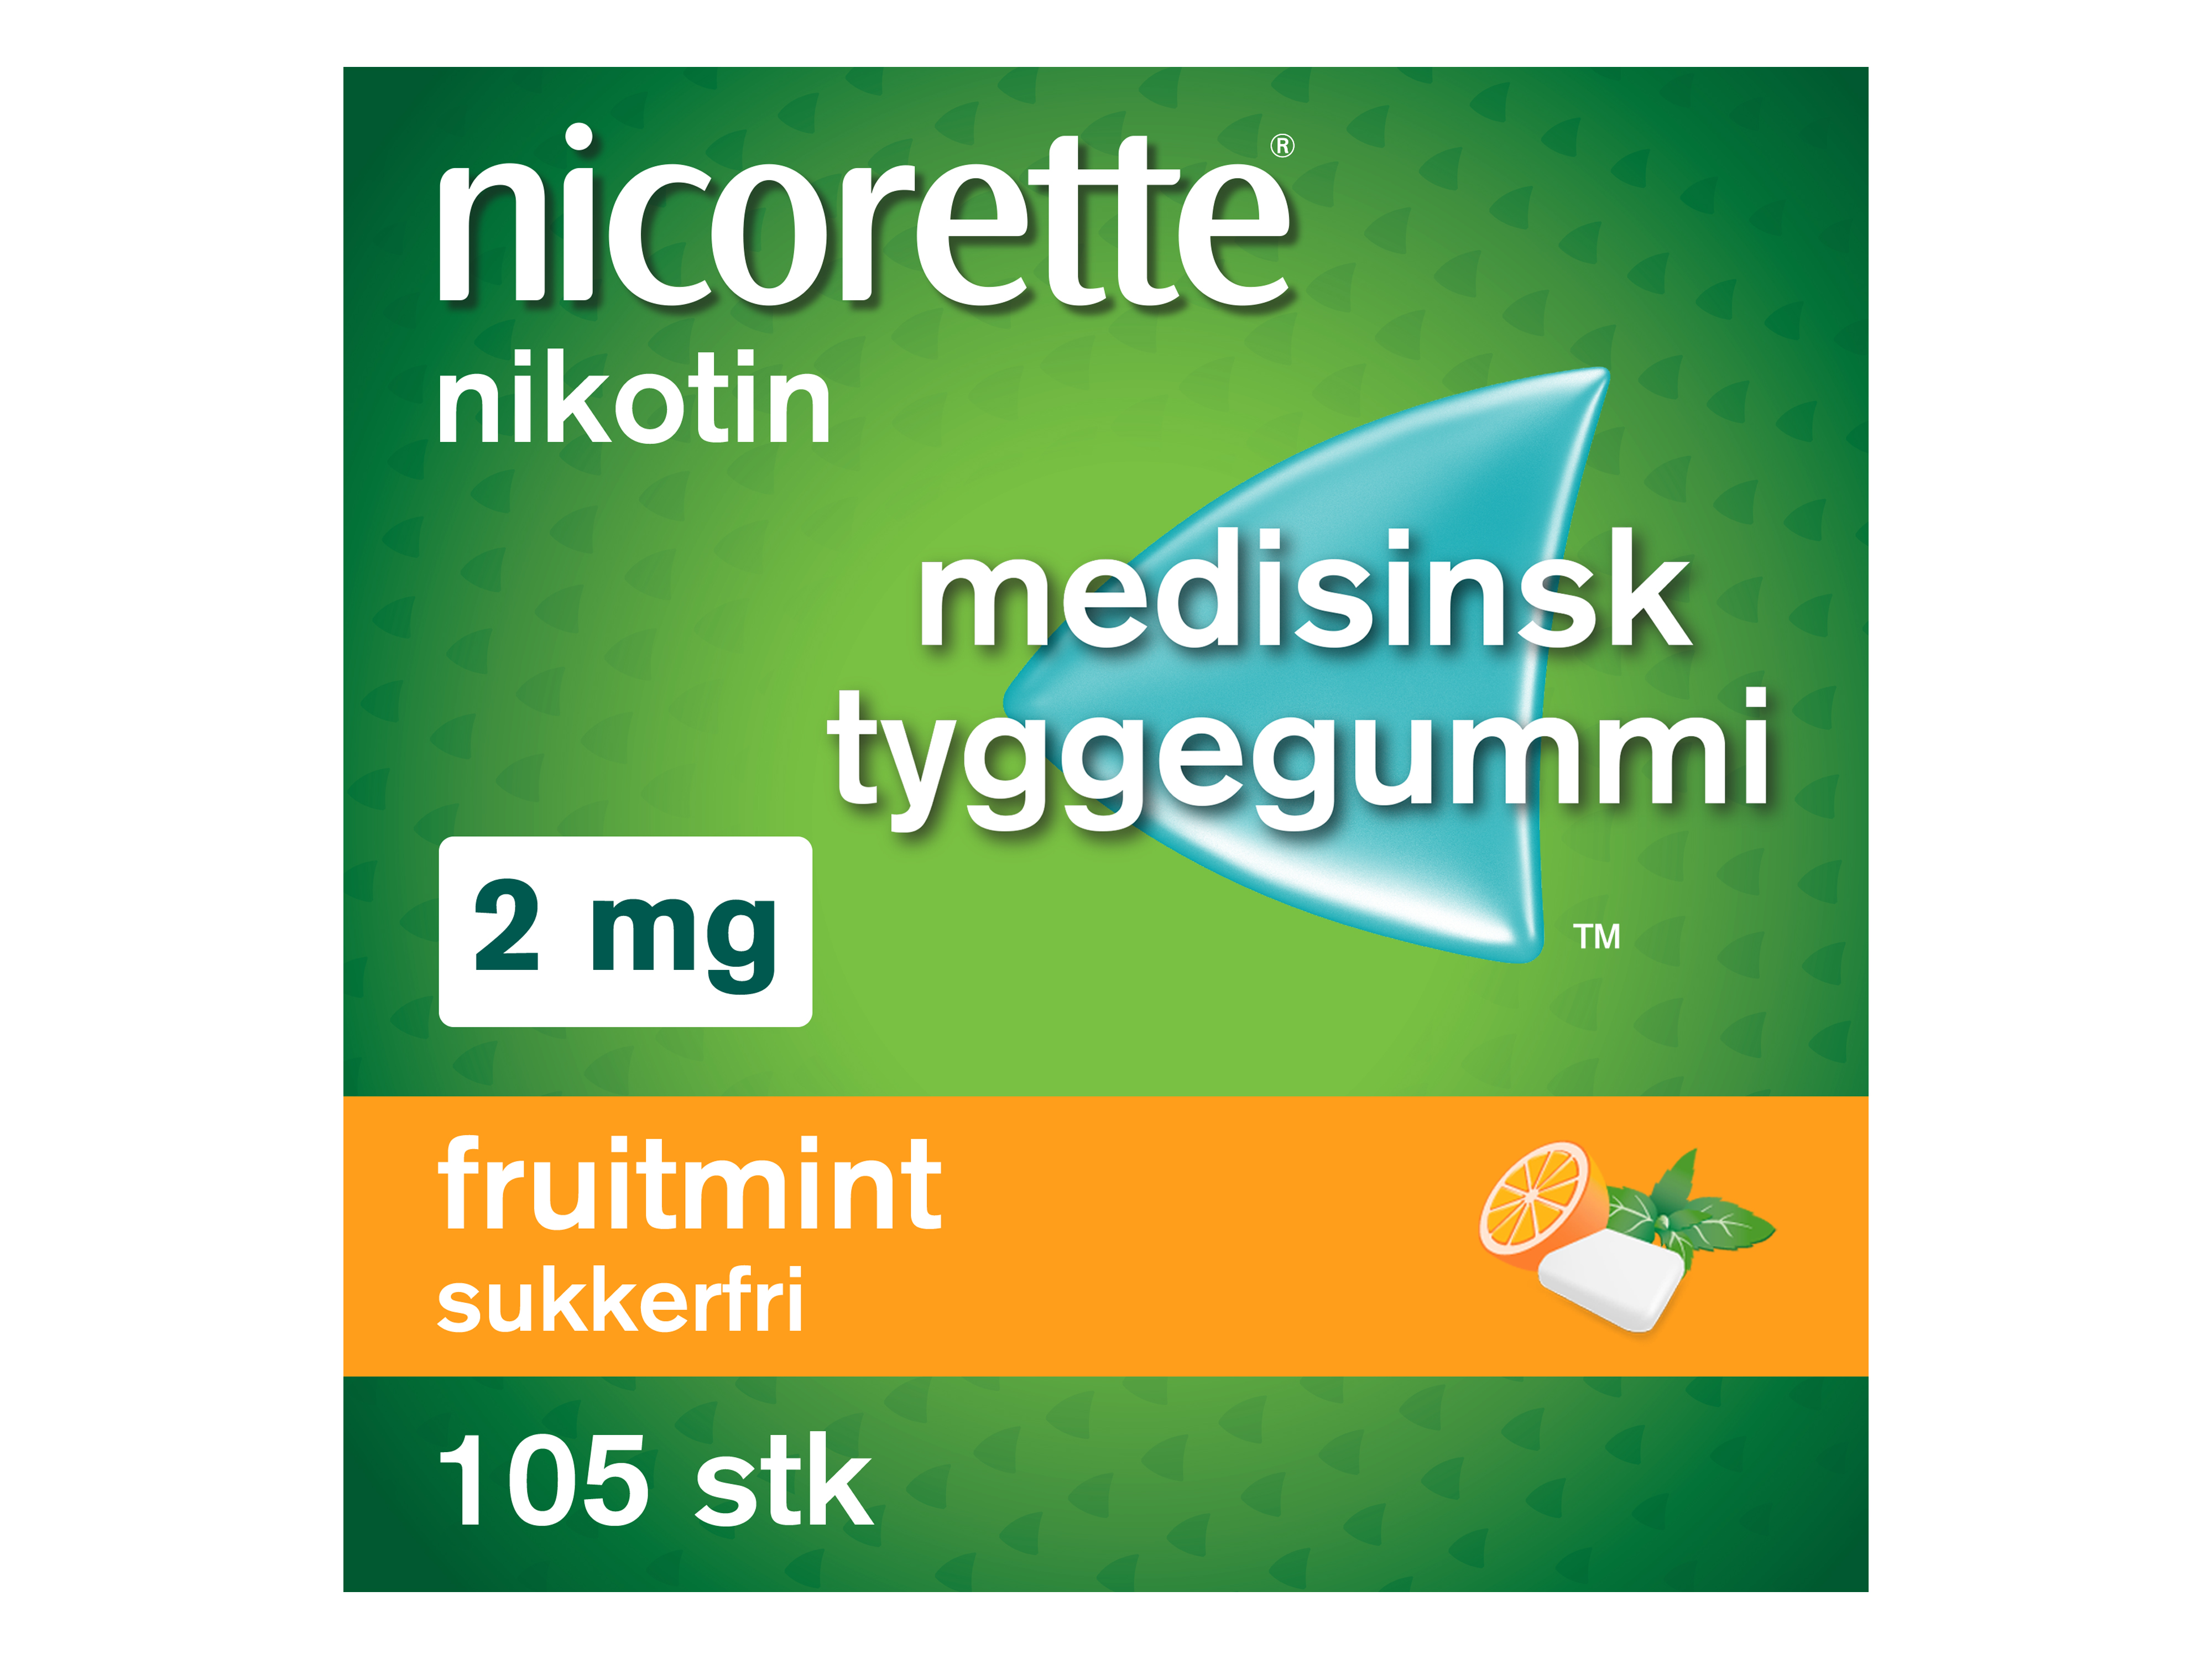 Nicorette Tyggegummi, 2 mg nikotin, Fruitmint 105 stk., Slutte å røyke